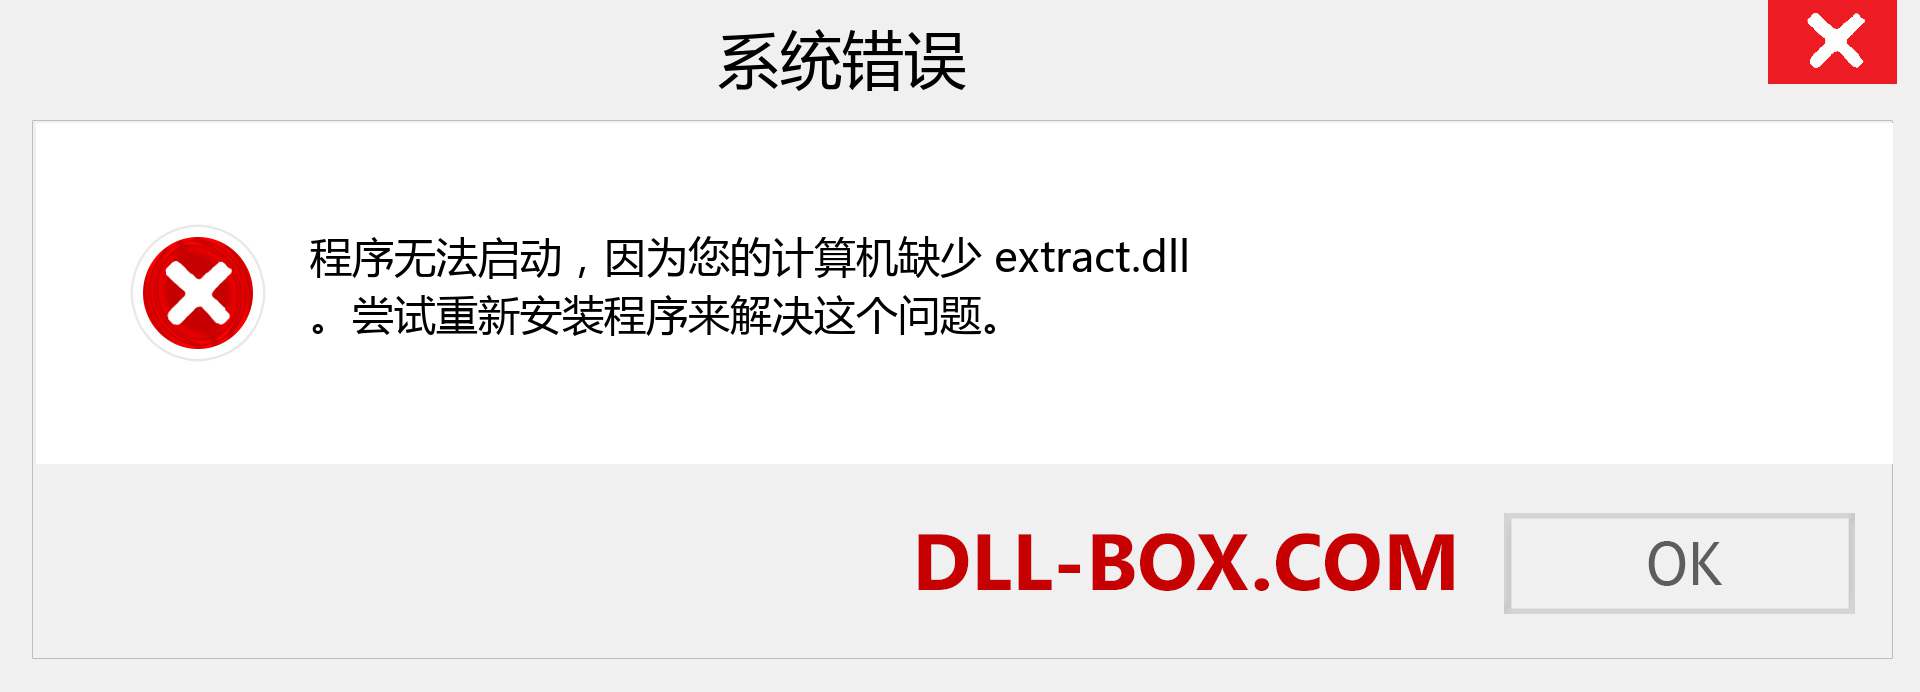 extract.dll 文件丢失？。 适用于 Windows 7、8、10 的下载 - 修复 Windows、照片、图像上的 extract dll 丢失错误